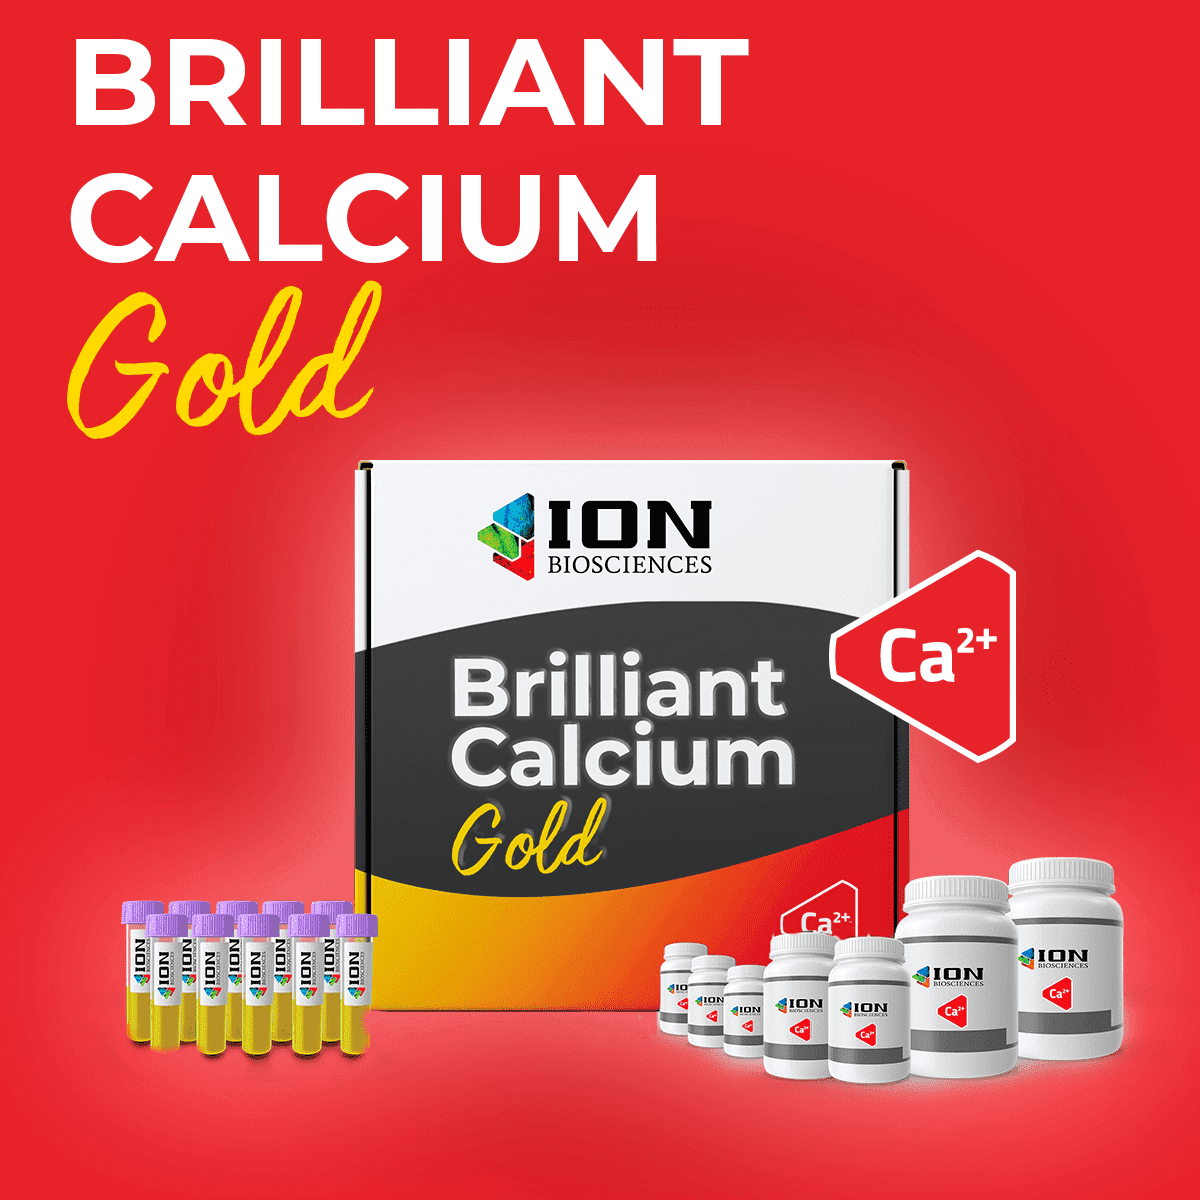 Brilliant calcium gold, calcium mobilization assay product packaging